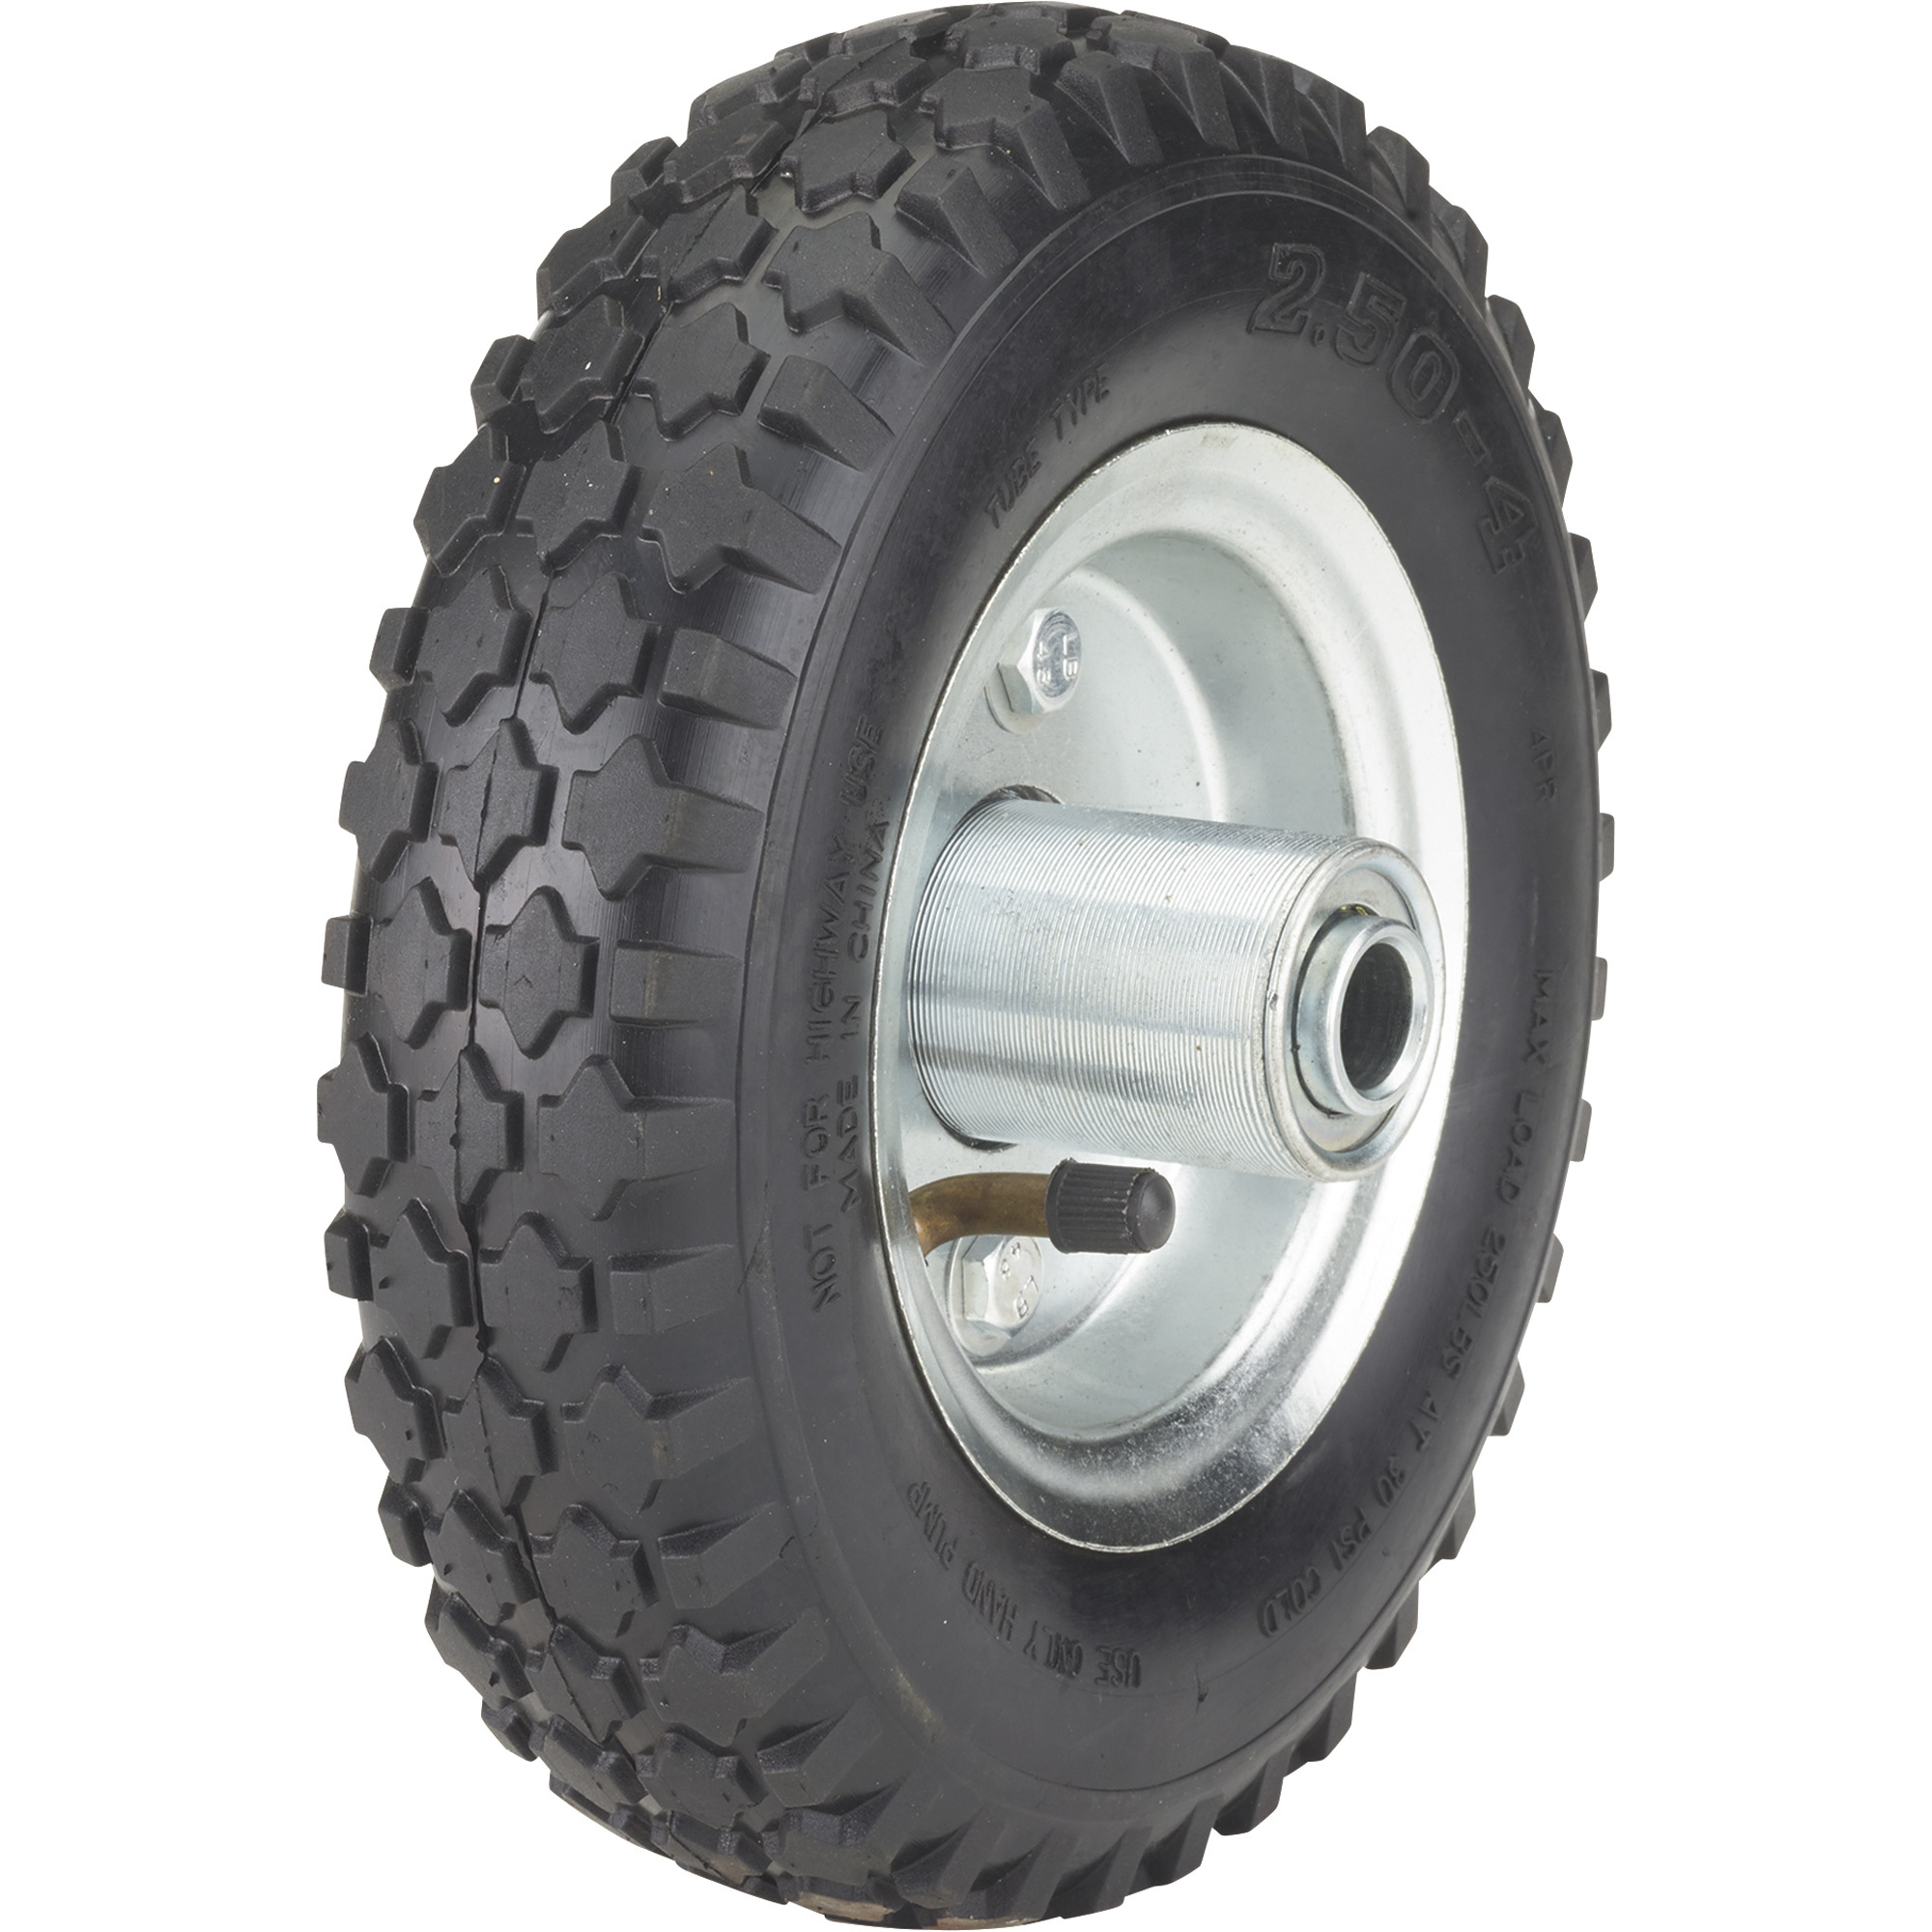 Ironton 8Inch Pneumatic Wheel and Tire-- 250-Lb. Capacity, Knobby Tread